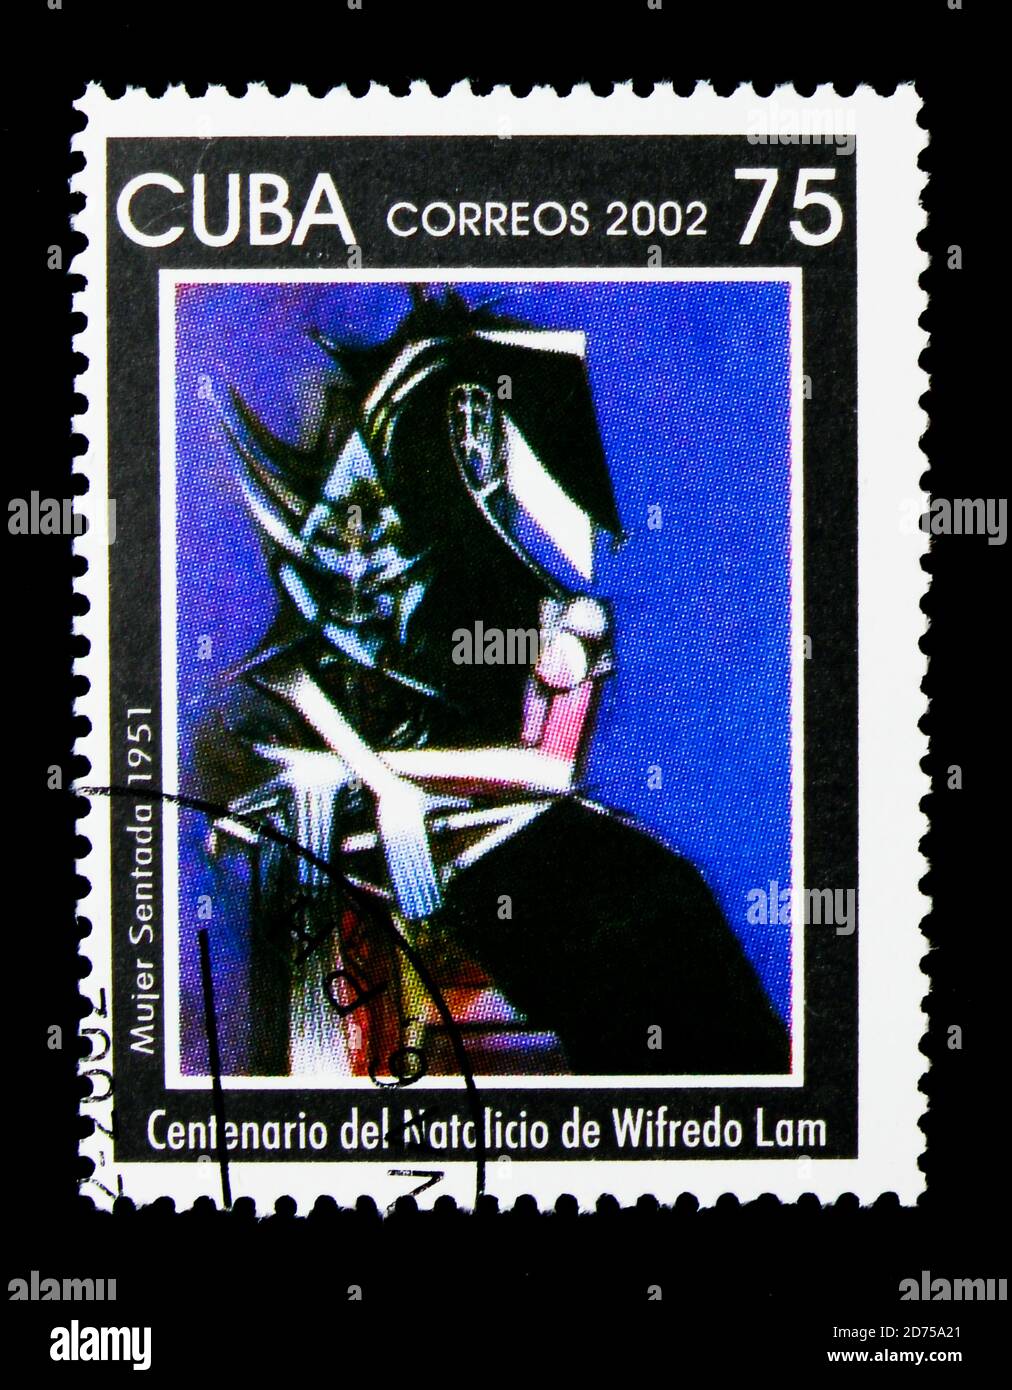 MOSCOU, RUSSIE - 25 NOVEMBRE 2017 : un timbre imprimé à Cuba montre Mujer Sentada 1951, centenaire de la naissance de la série Wilfredo Lam, vers 2002 Banque D'Images